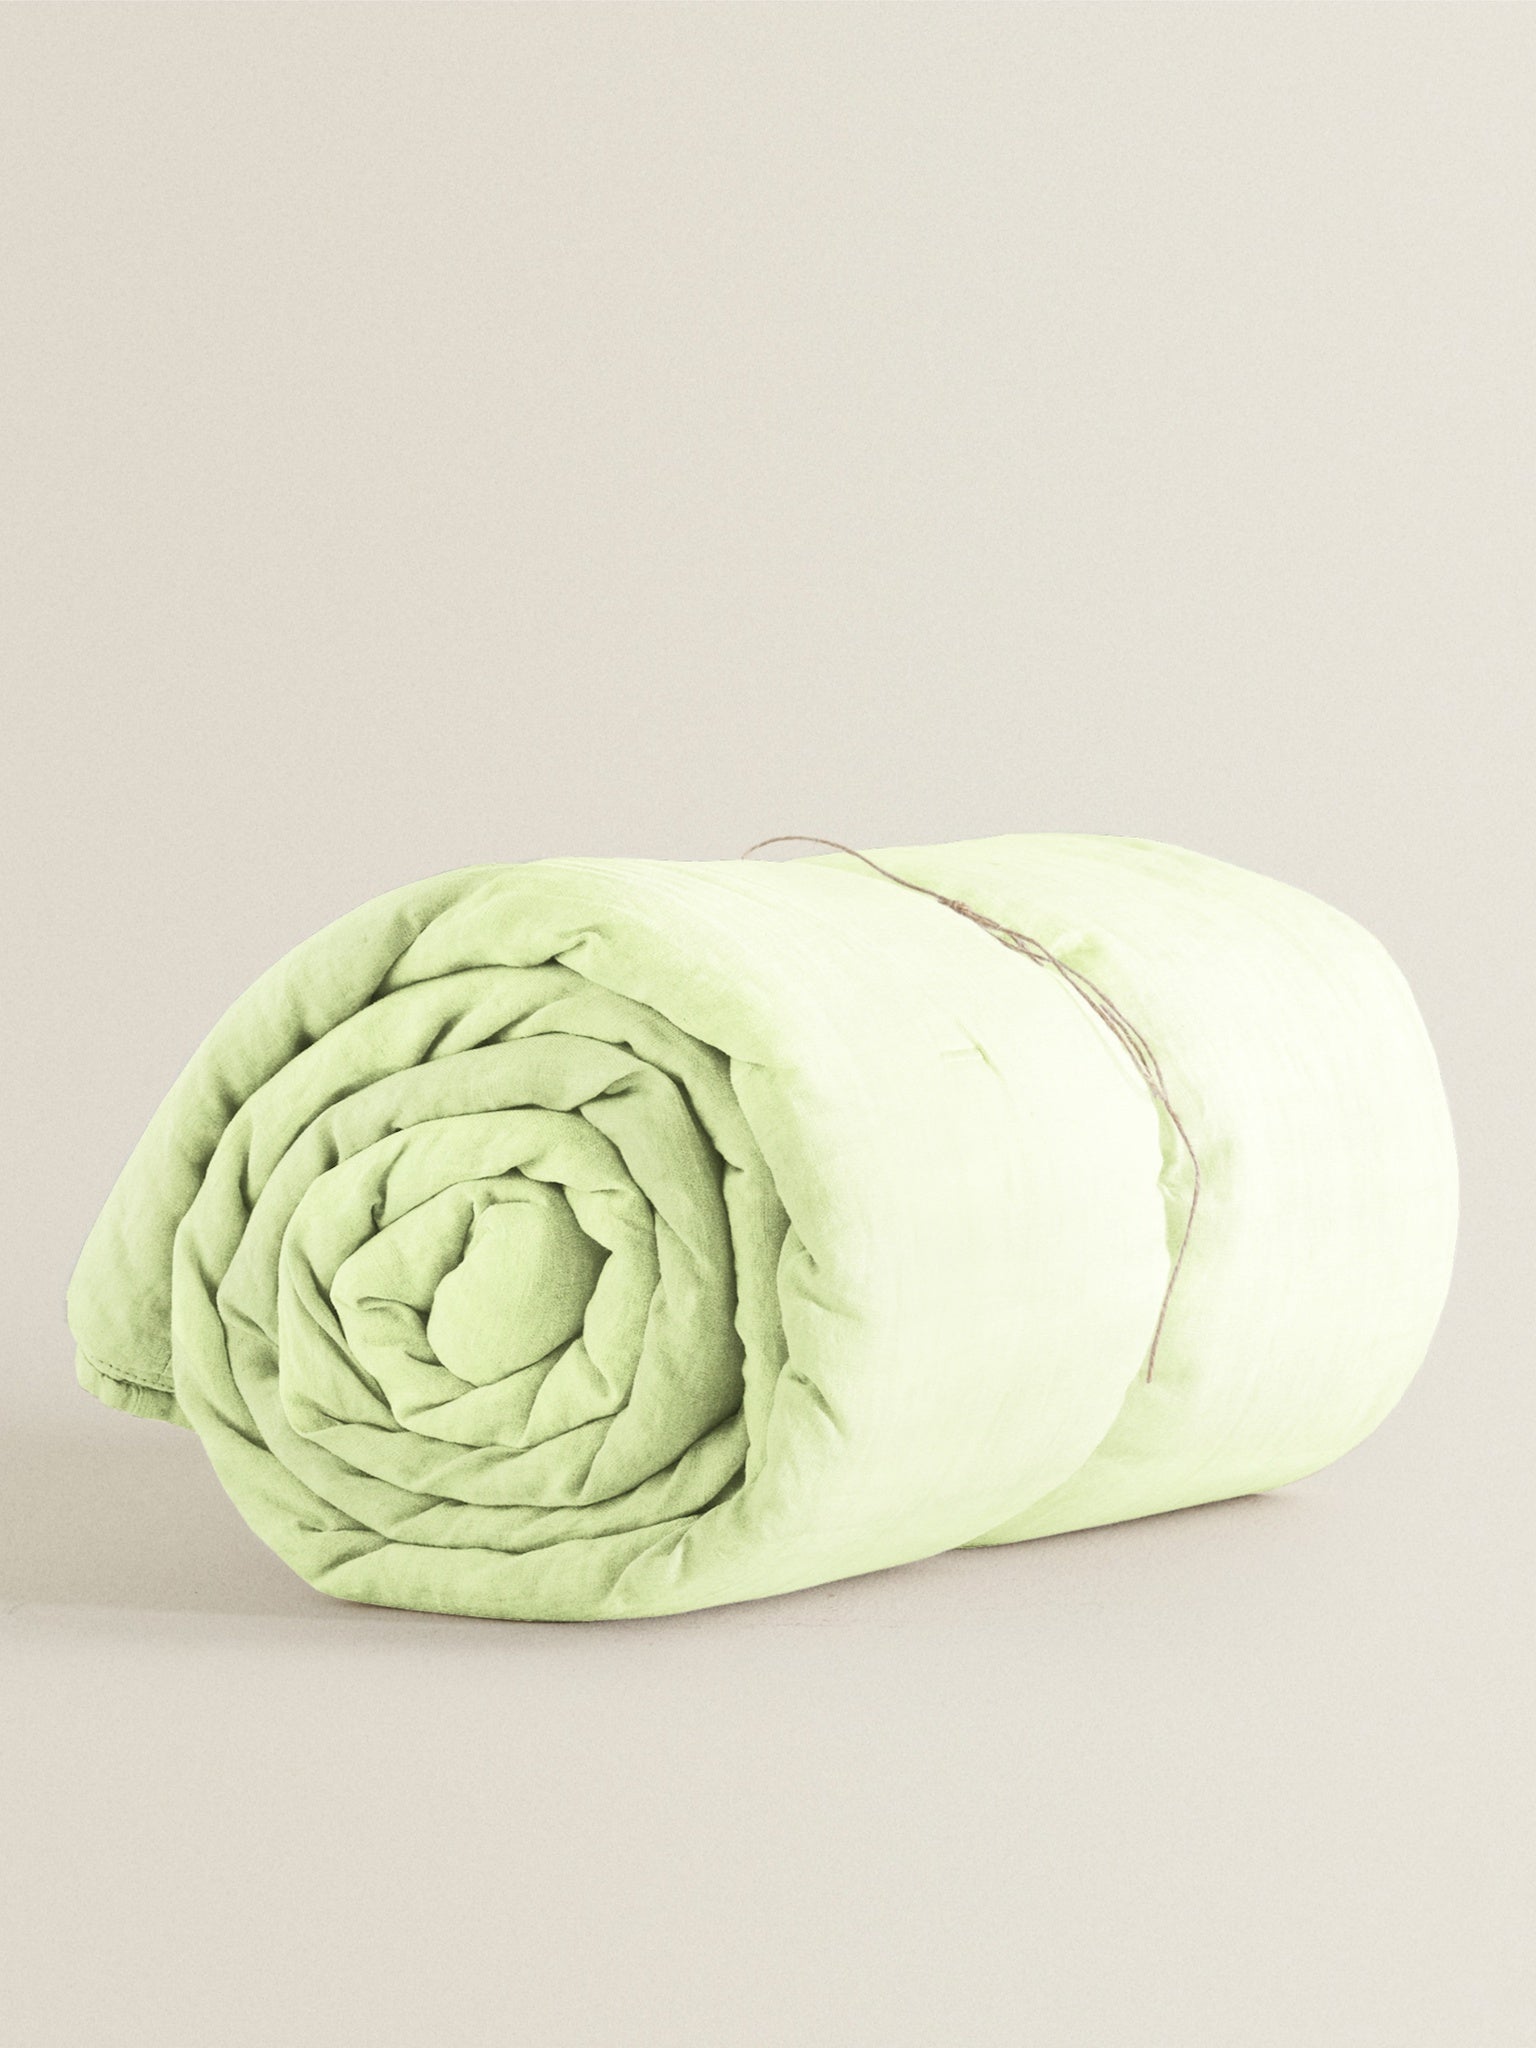 'Lime Green' Organic Duvet Cover